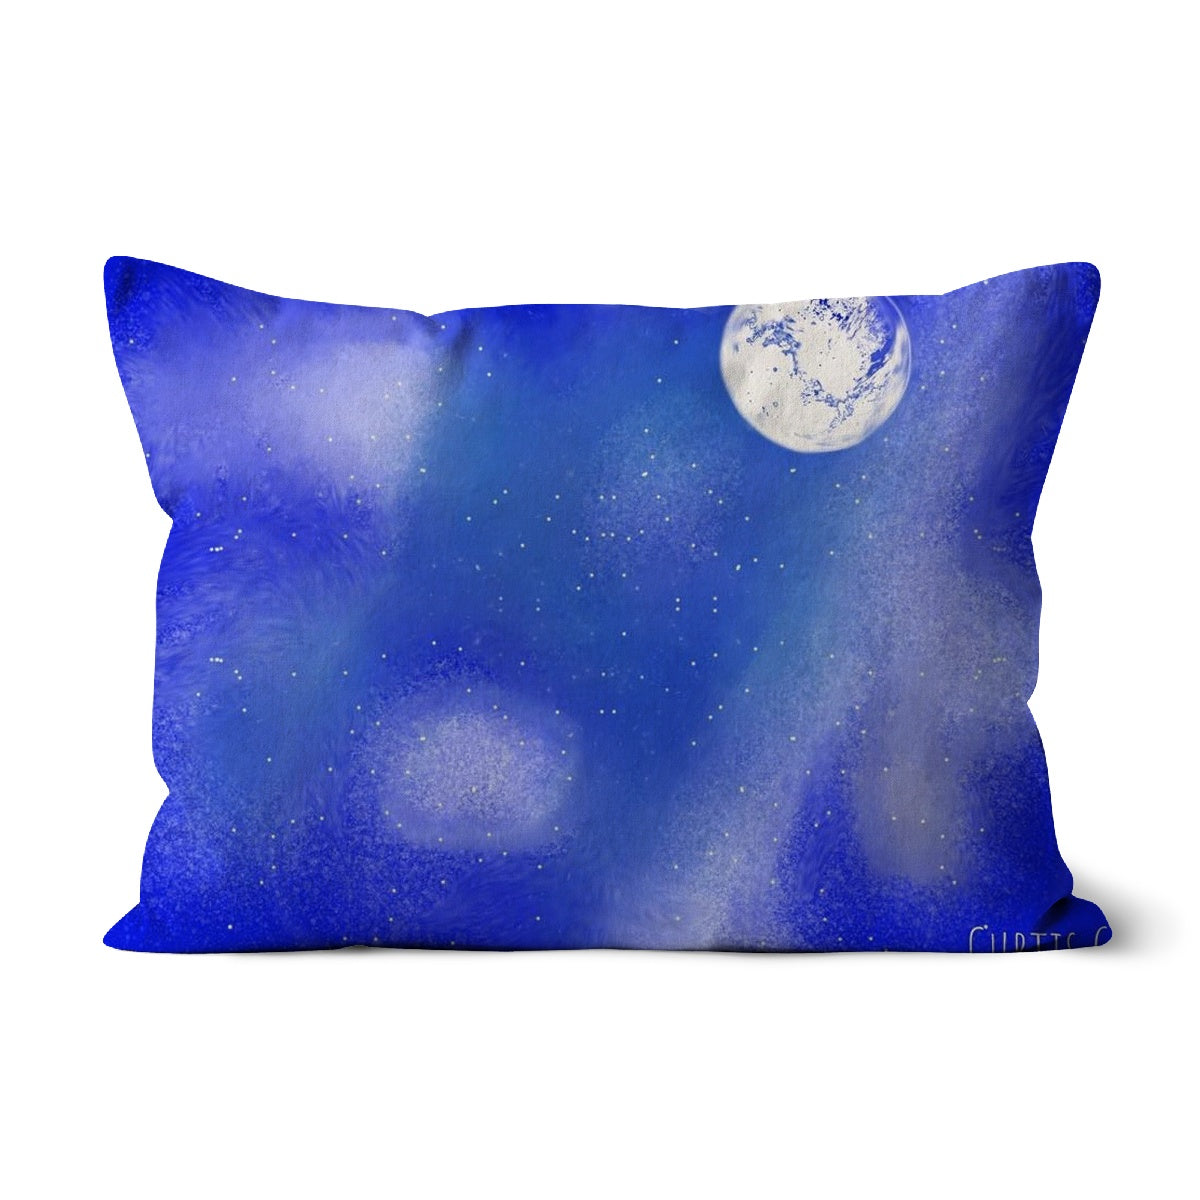 Blue Cushion